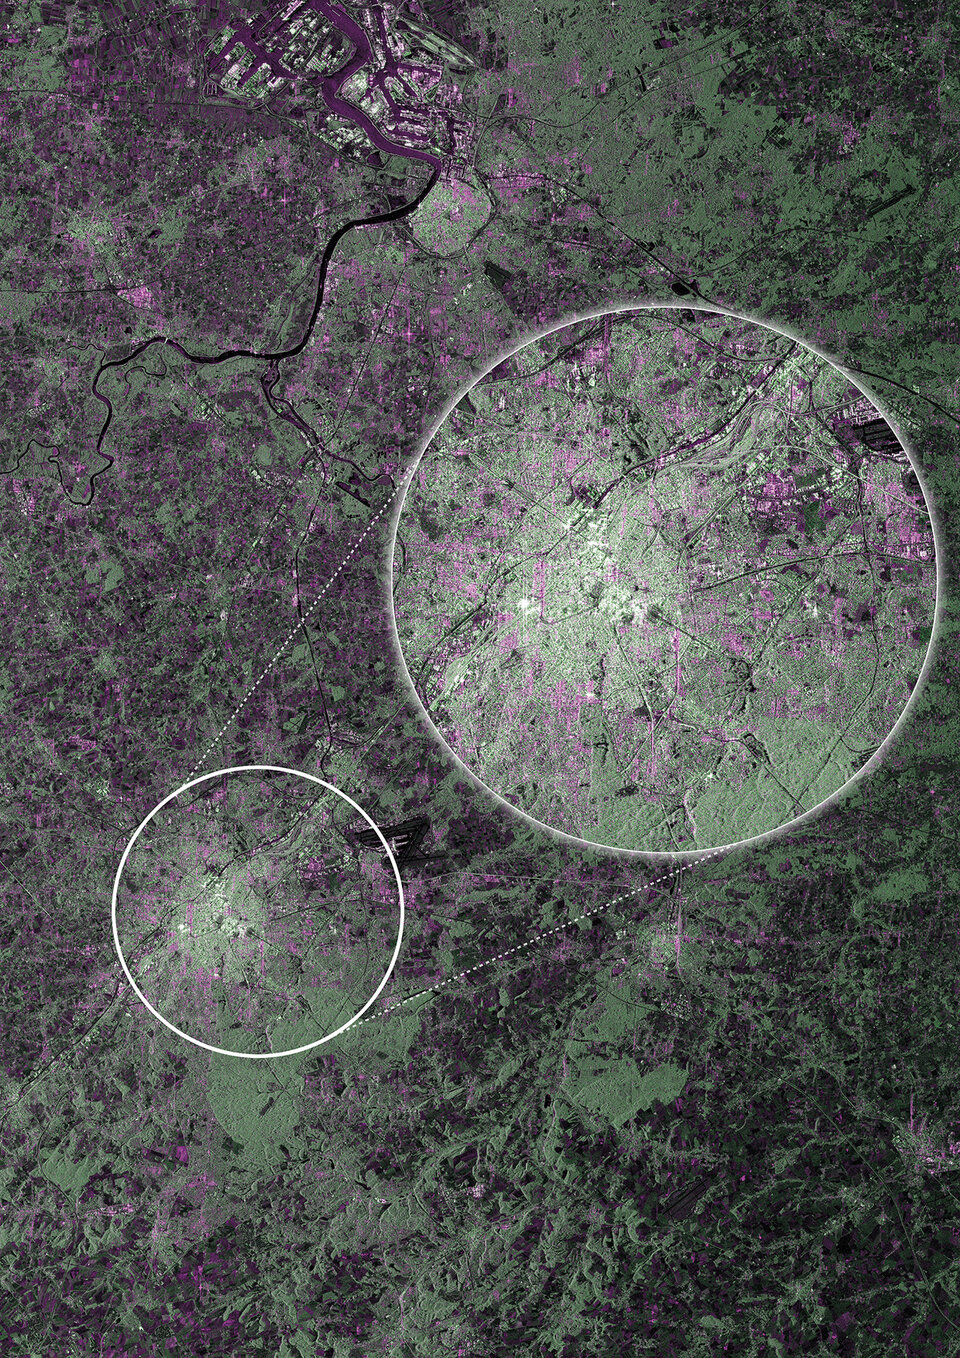 Image de Bruxelles prise par un satellite Sentinel